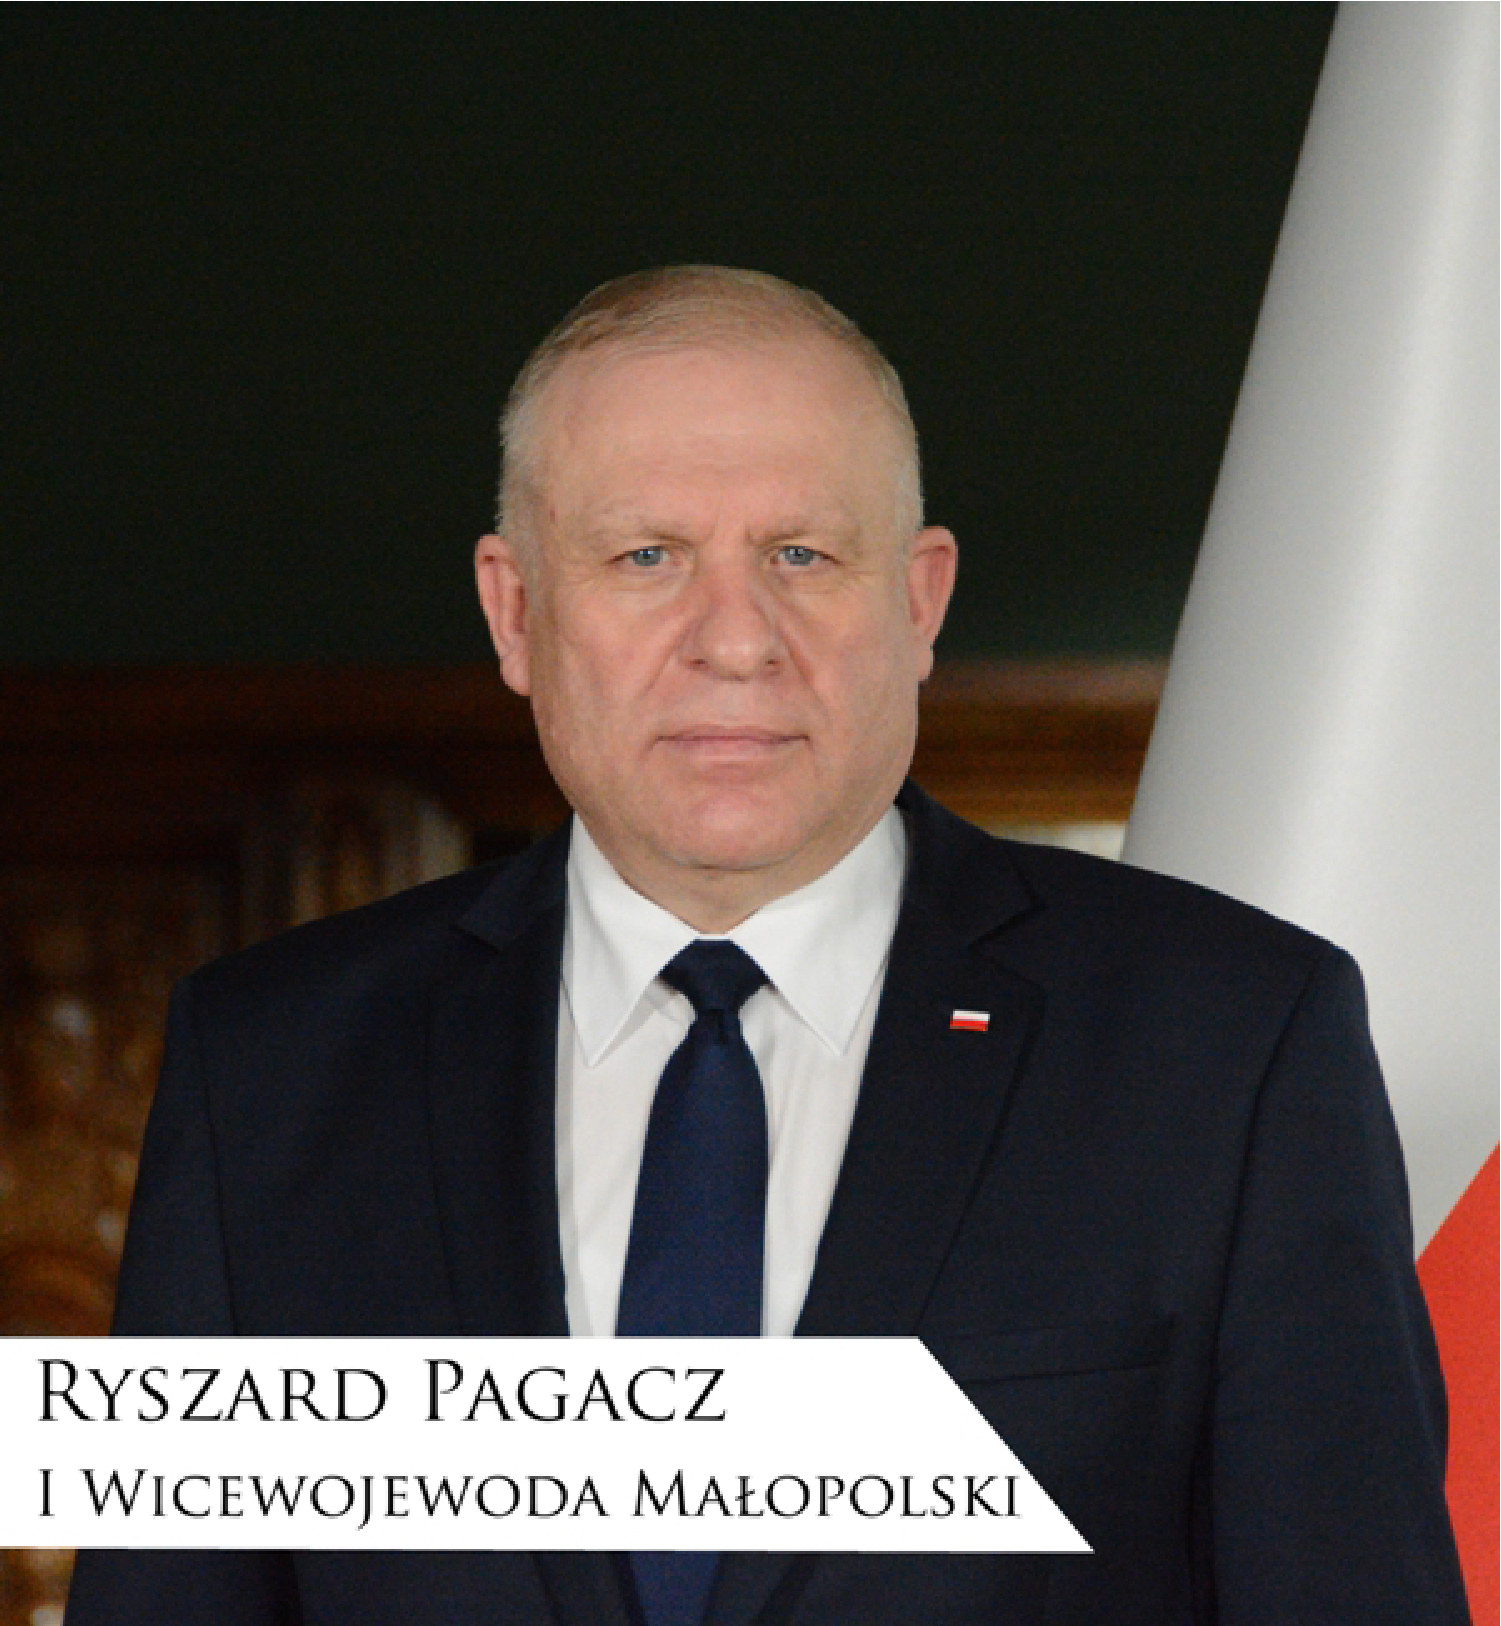 Ryszard  Pagacz, I Wicewojewoda Małopolski